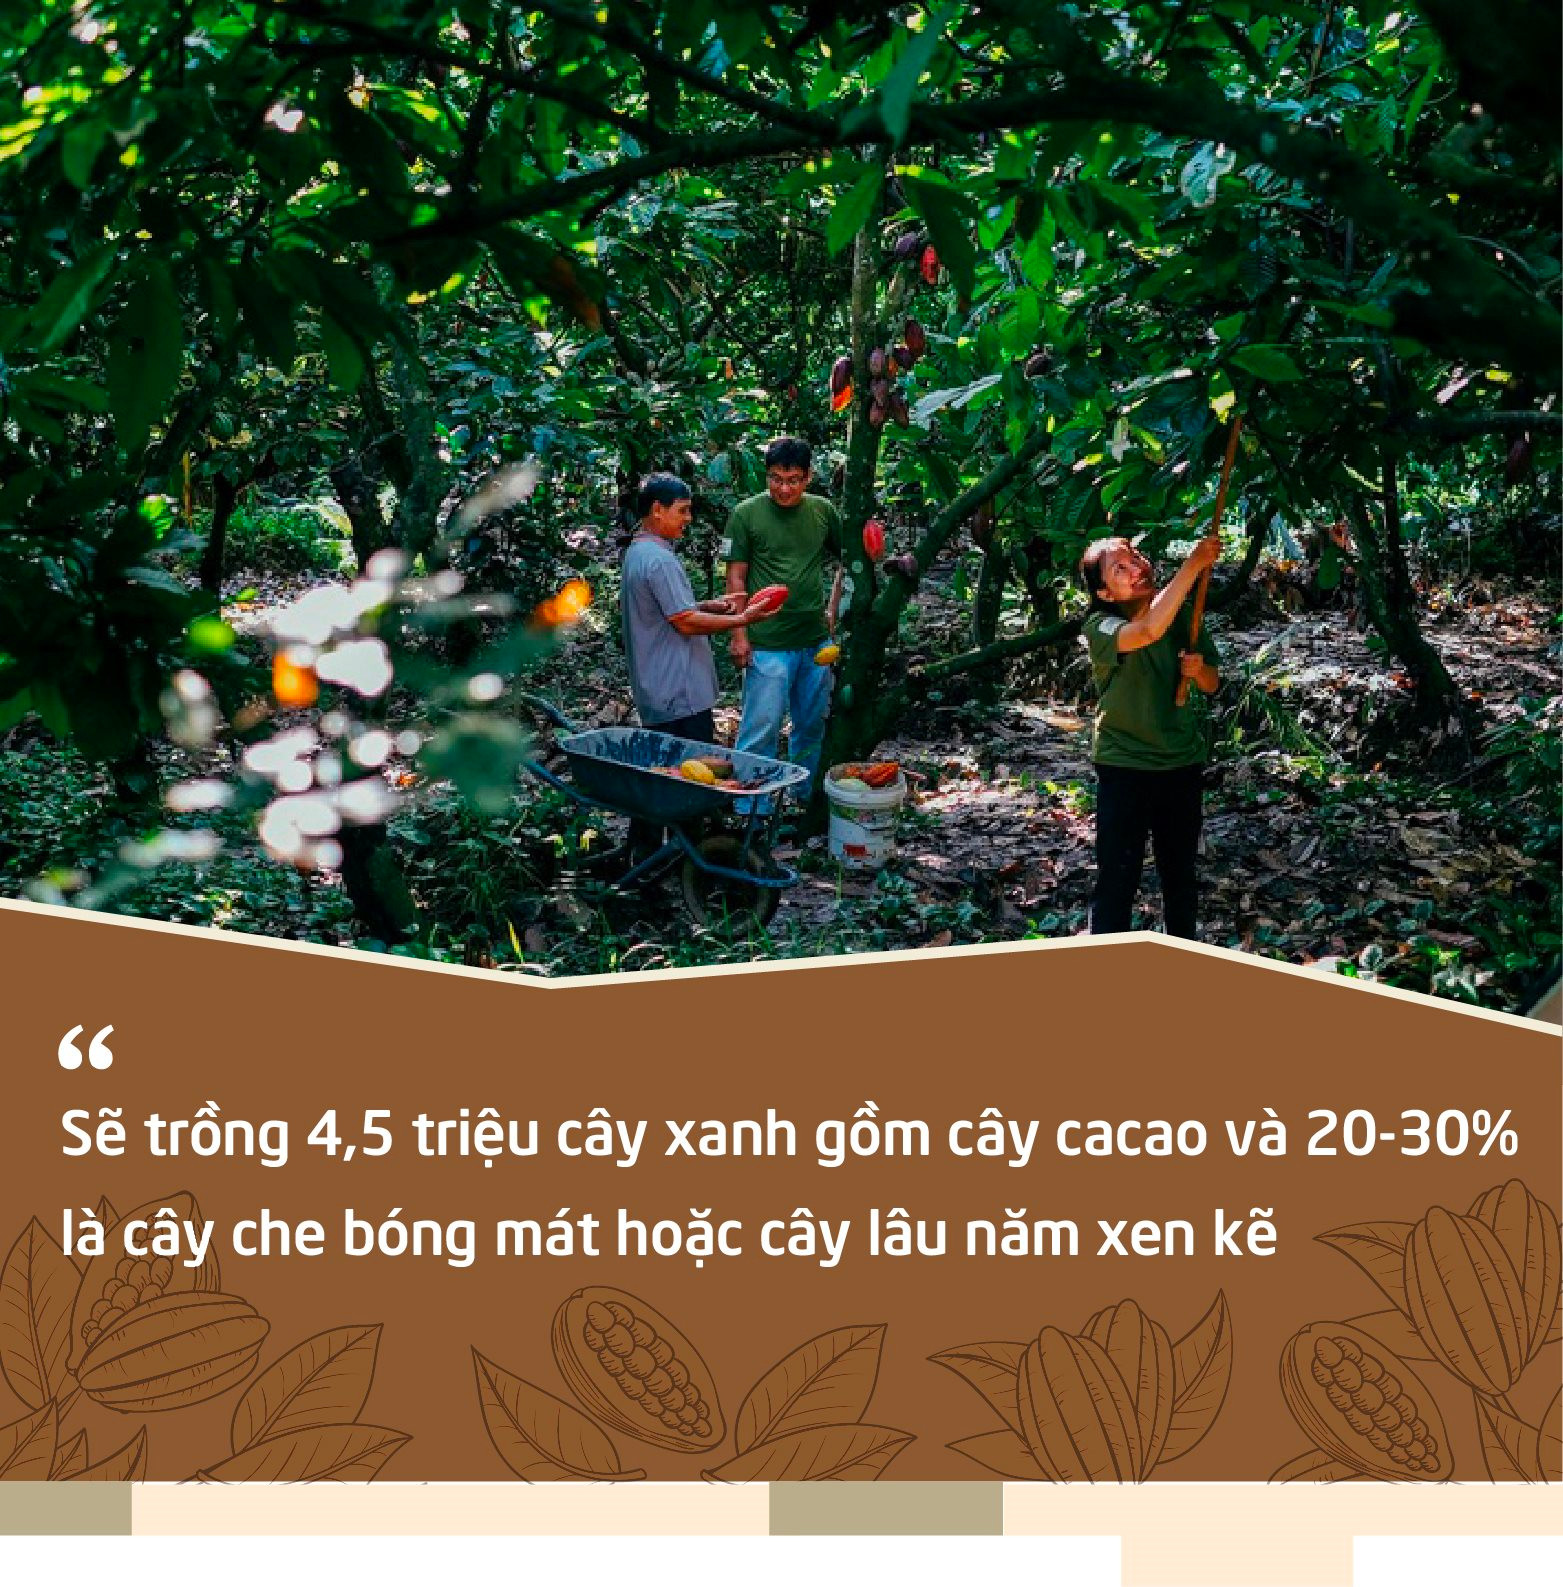 Puratos và hành trình Cacao Trace: “Một thanh sô cô la sẽ kém hấp dẫn nếu người dùng biết được đằng sau đó là giọt nước mắt của người nông dân” - Ảnh 5.